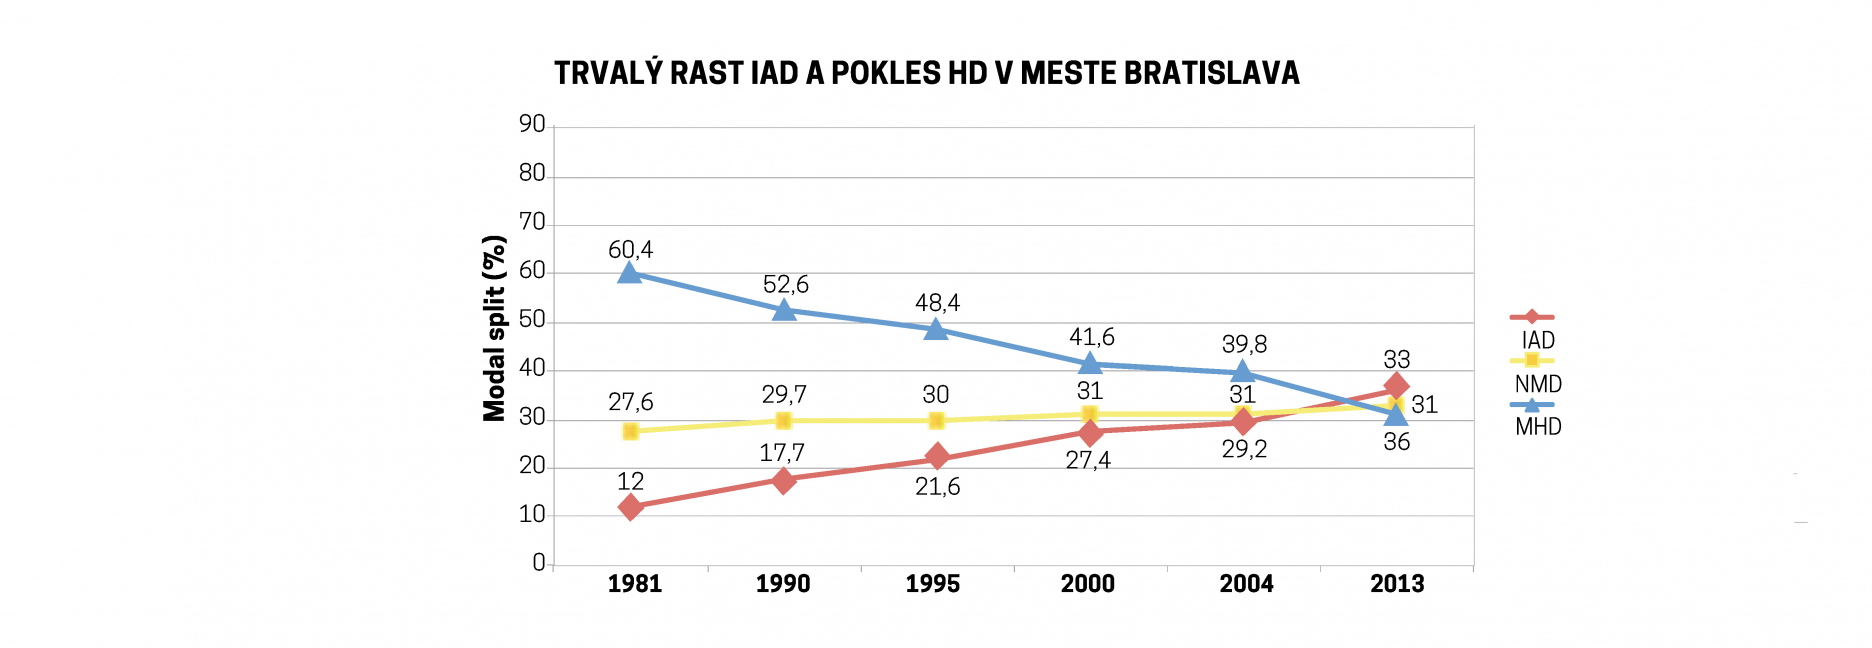 Trvalý rast IAD a pokles HD v meste Bratislava